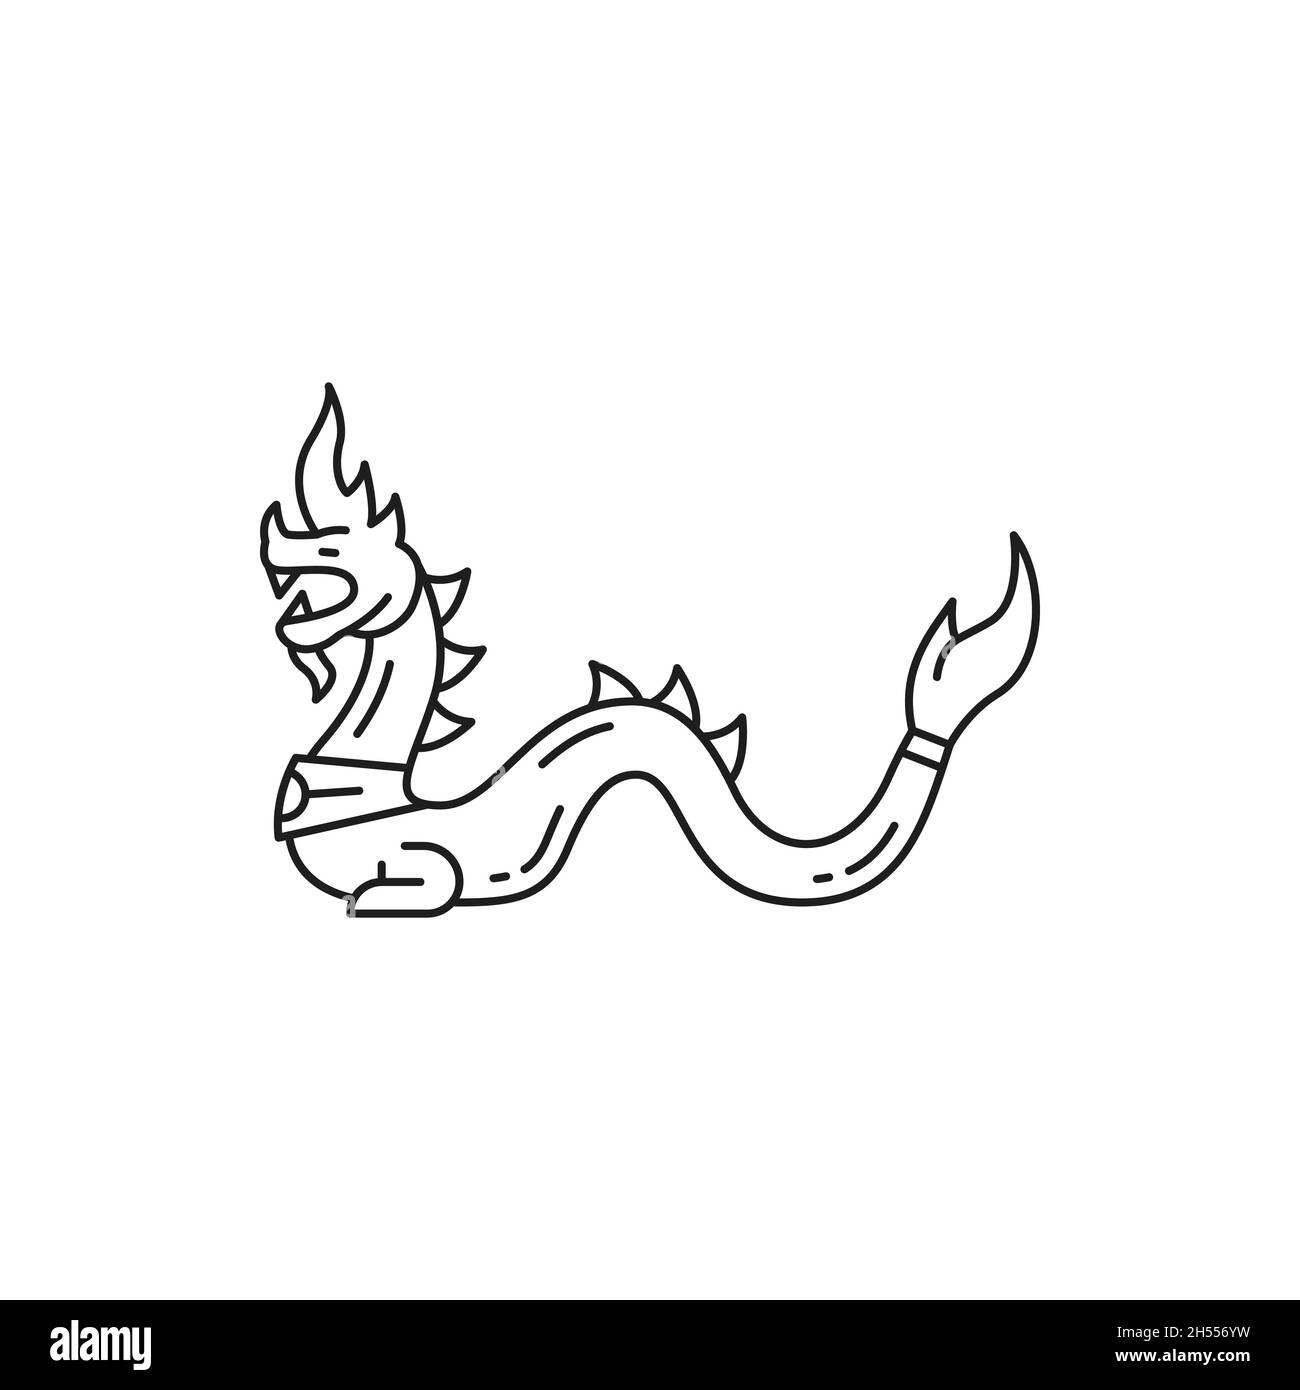 Icône de ligne mince isolée de dragon ou de serpent.Vecteur dragon dessin de tatouage japonais ou de religion mascotte, bête mythique.Créature serpent serpent, cul oriental Illustration de Vecteur